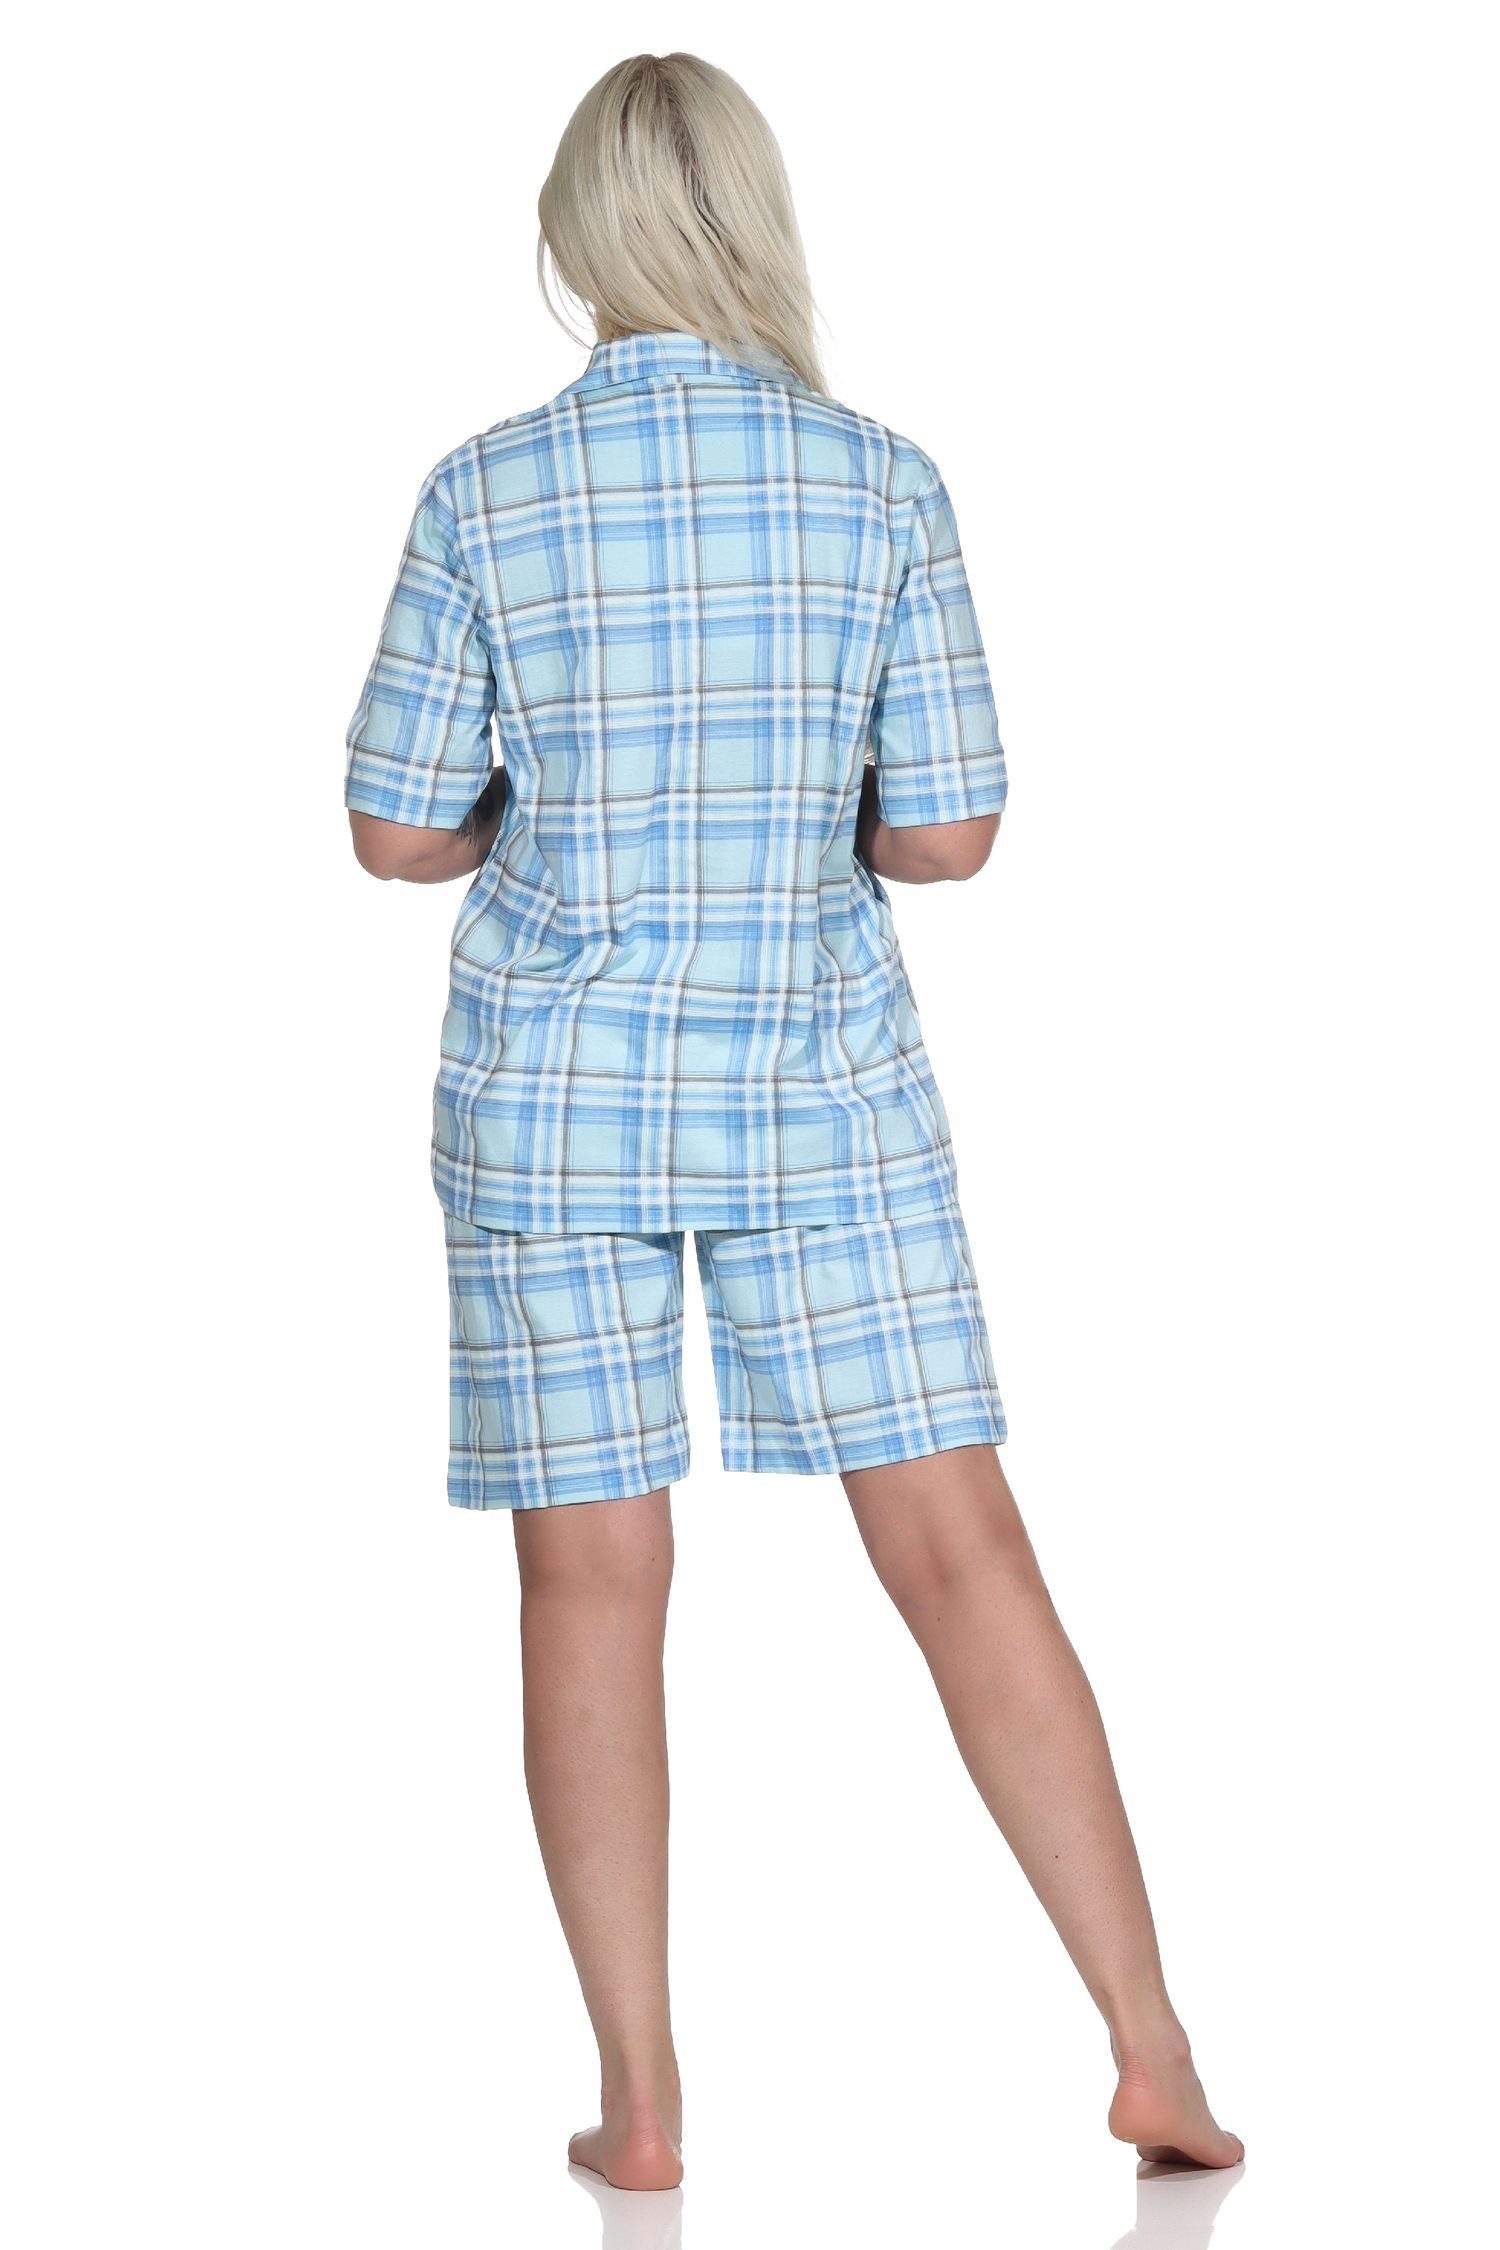 Damen in Pyjama Shorty kurzarm helltürkis zum aus Pyjama durchknöpfen Normann Karo-Optik Jersey